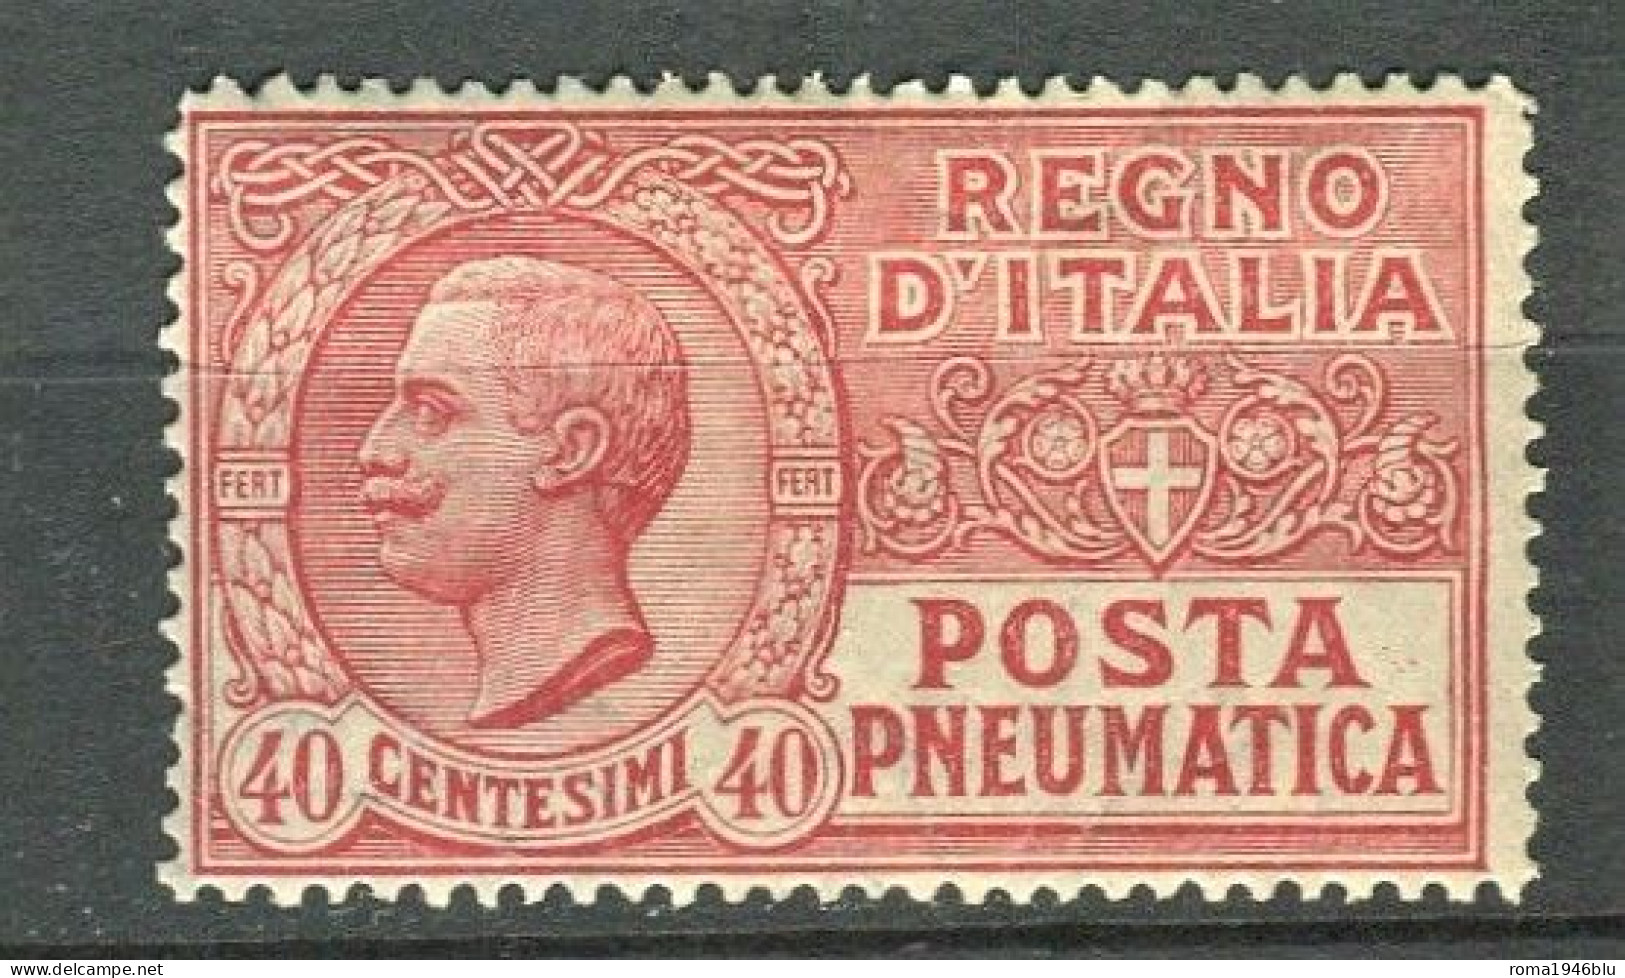 REGNO 1925 POSTA PNEUMATICA 40 C. ** MNH - Pneumatic Mail